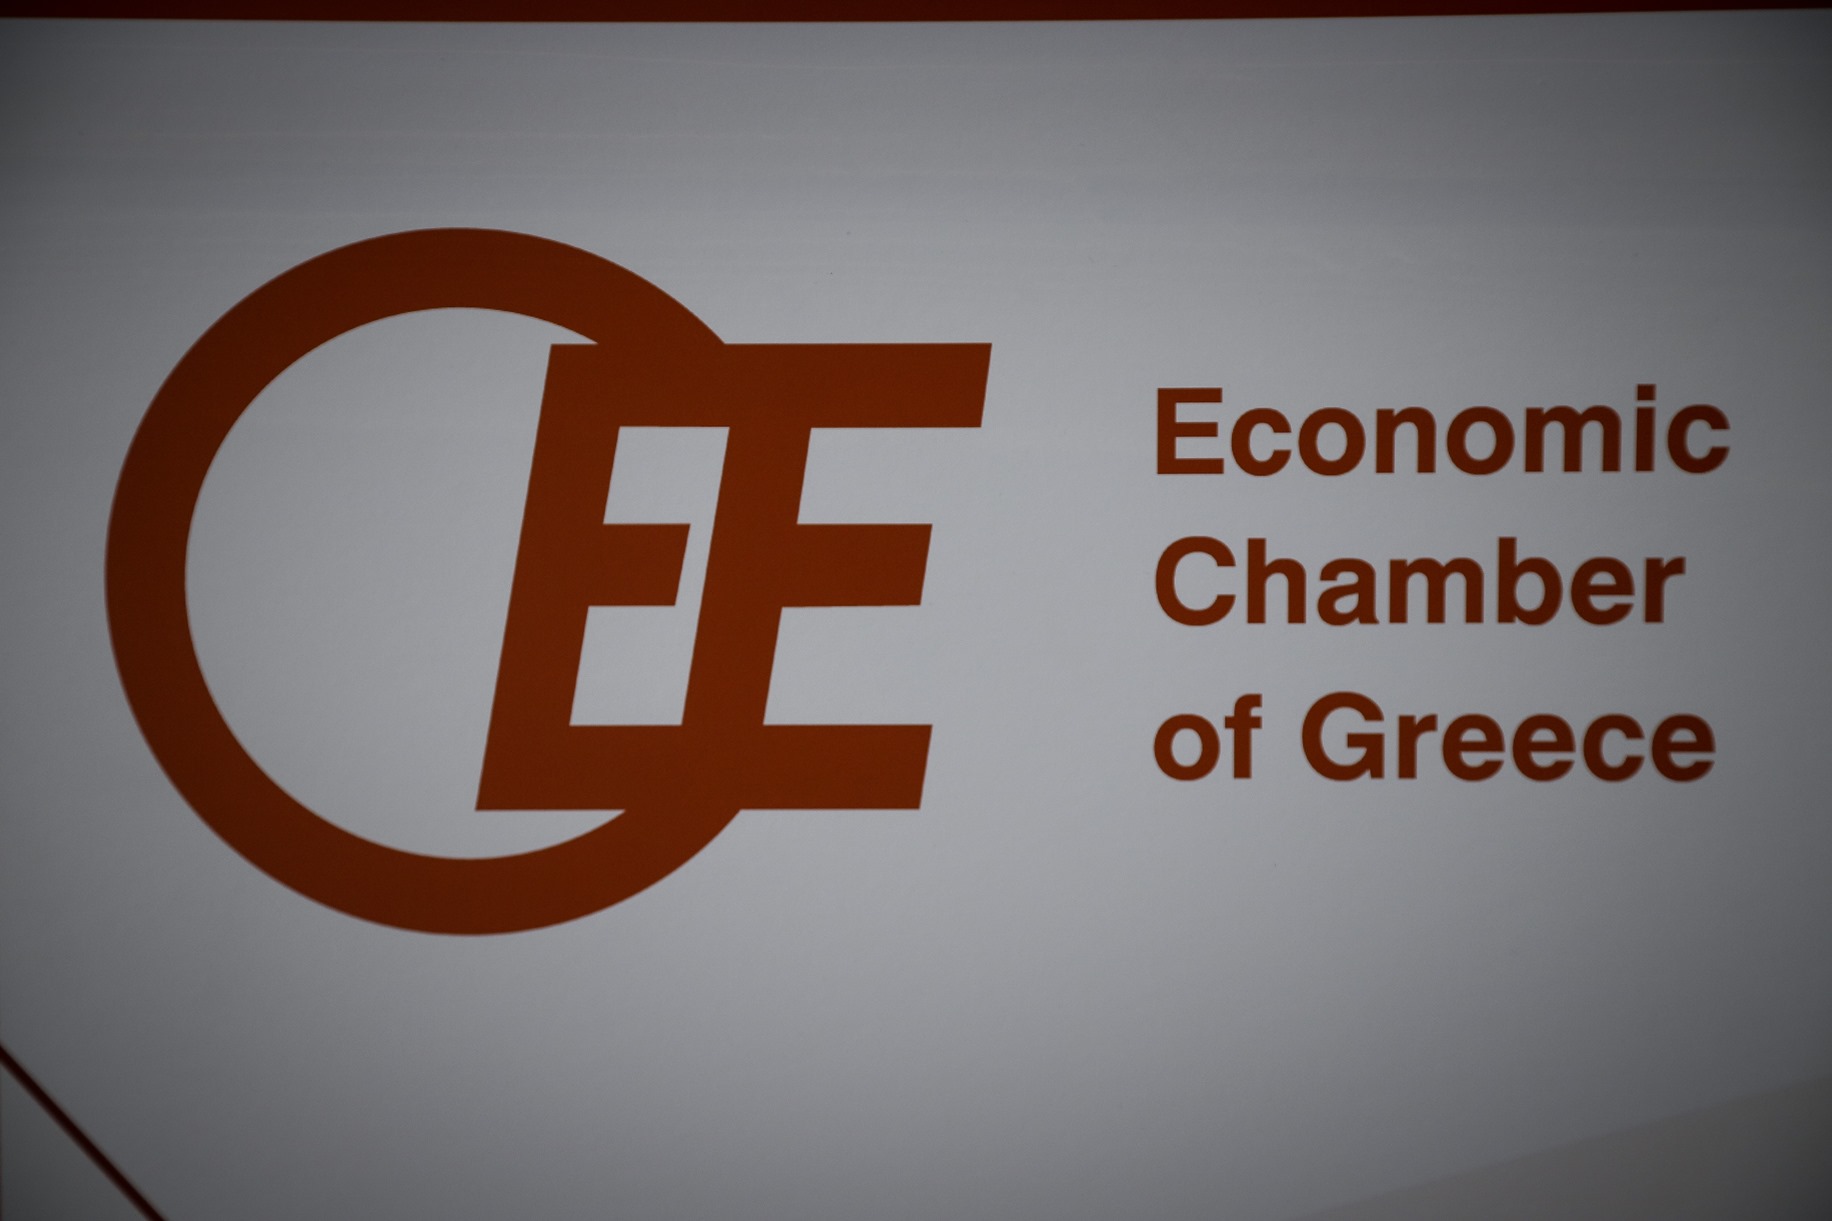 ΟΕΕ: Ψηφιακή πύλη για τις επιχειρήσεις